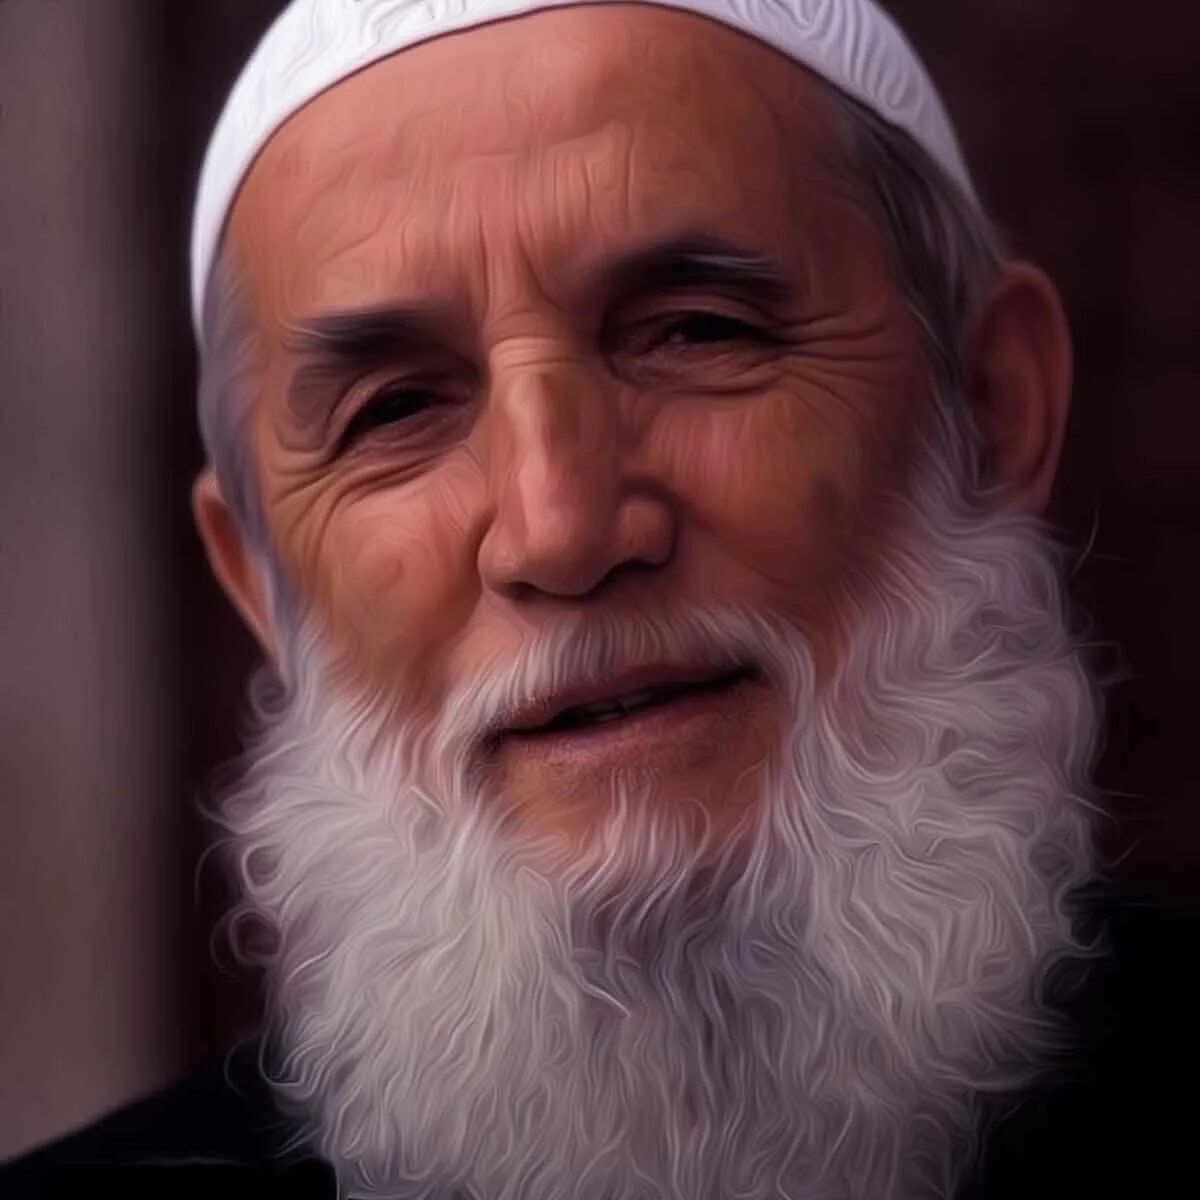 Дедушка араб. Хабибуллах Мухаммад. Андрей борода. Мусульманин. Мусульманская борода.